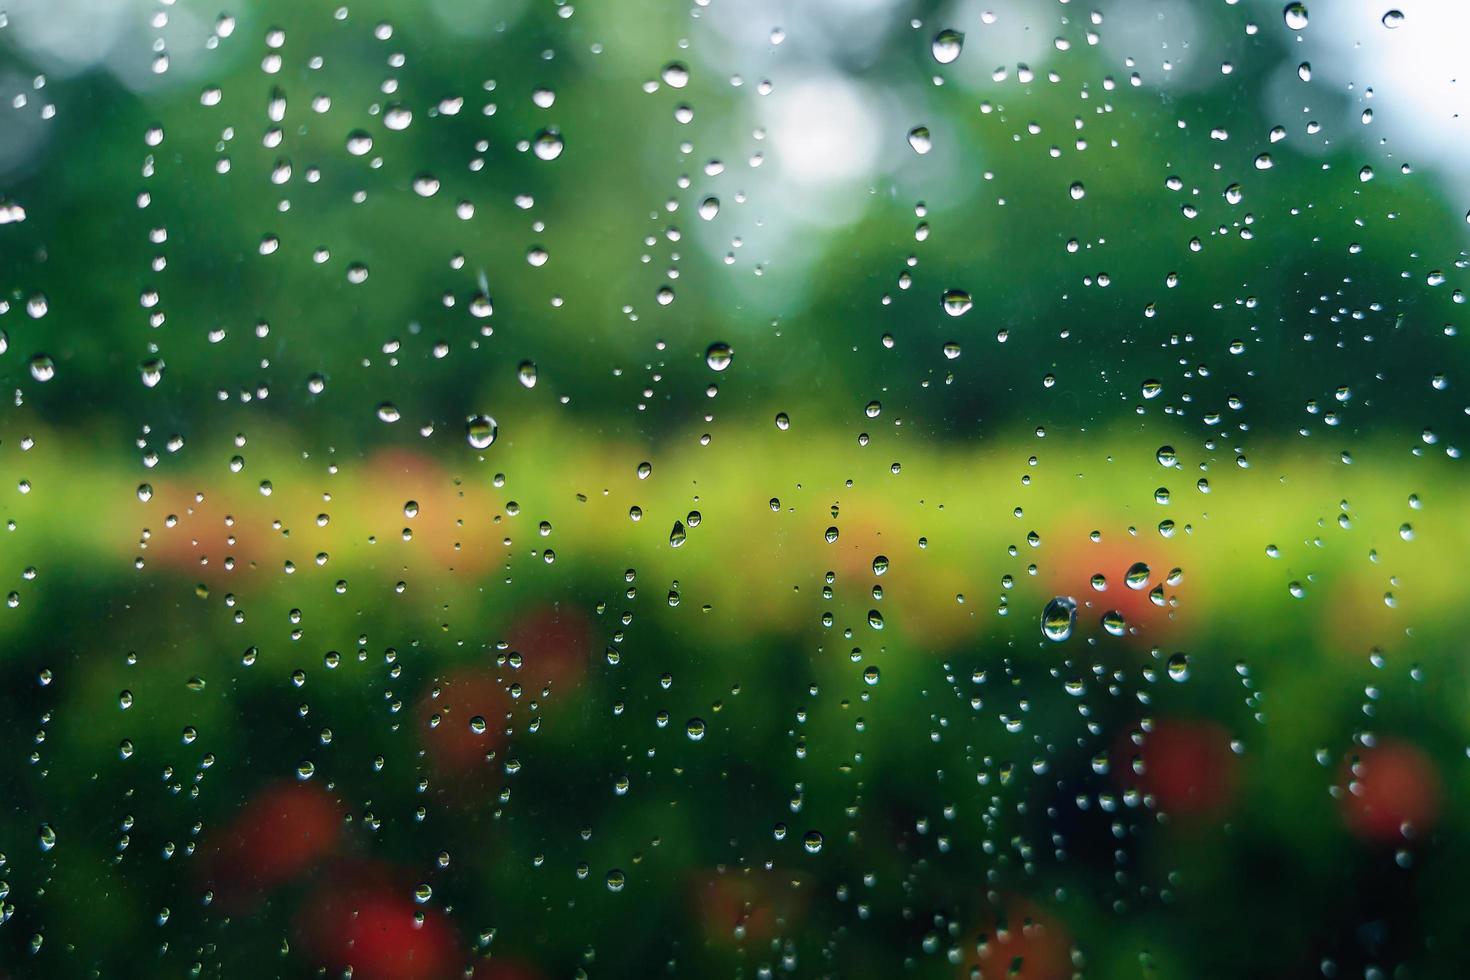 regndroppar på ytan av bilglas med suddig grön naturbakgrund genom fönsterglas av bil täckt av regndroppar. friskhet efter regn. våt vindruta från insidan av bilen. selektiv fokusering. foto